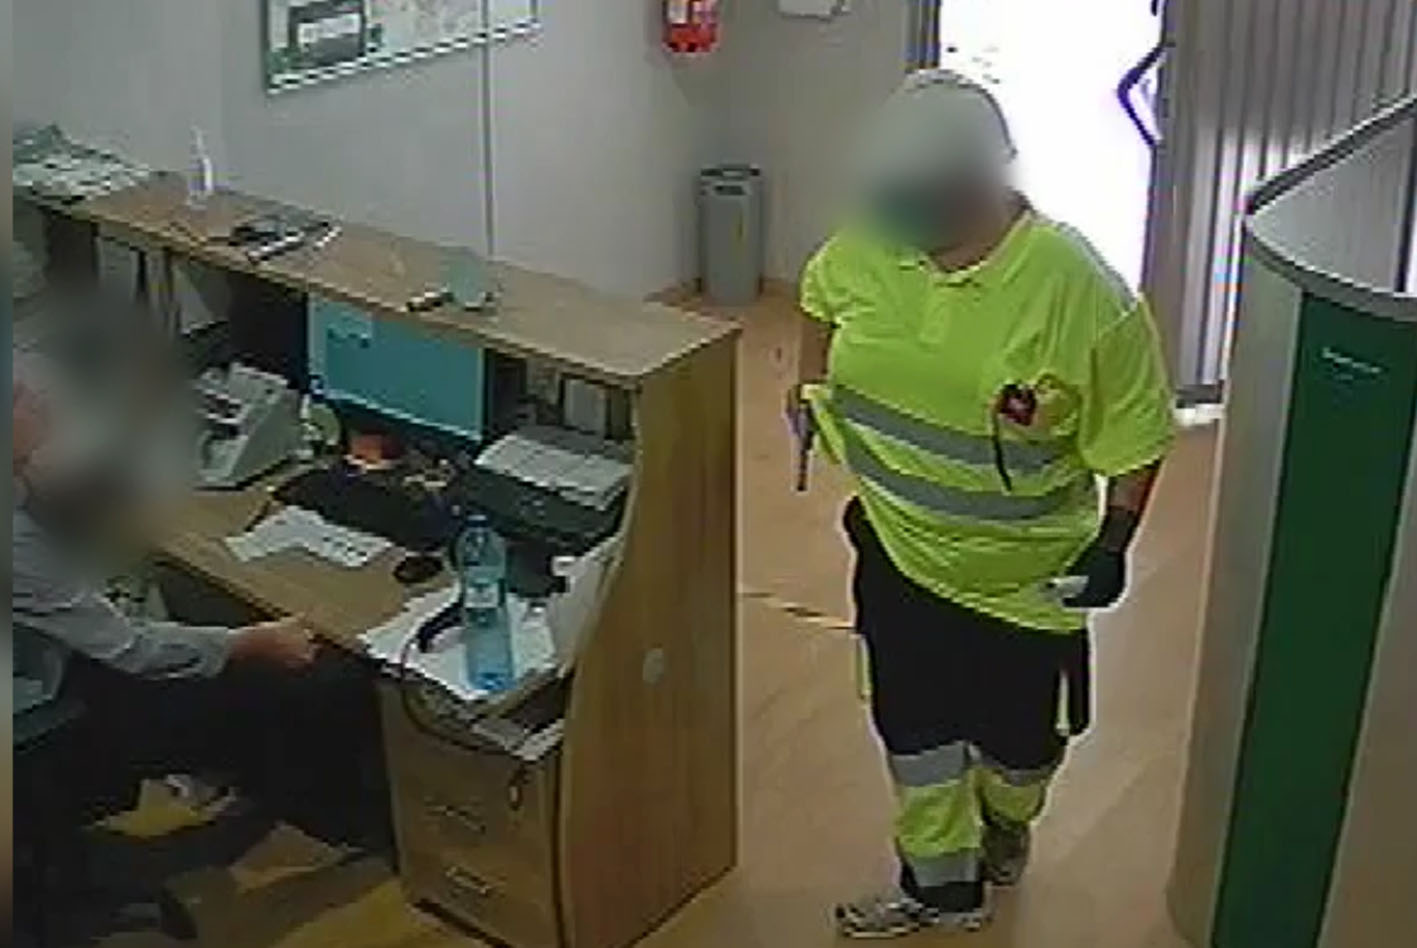 El atracador, vestido con un peto fluorescente, atracaba sucursales bancarias con un solo empleado.